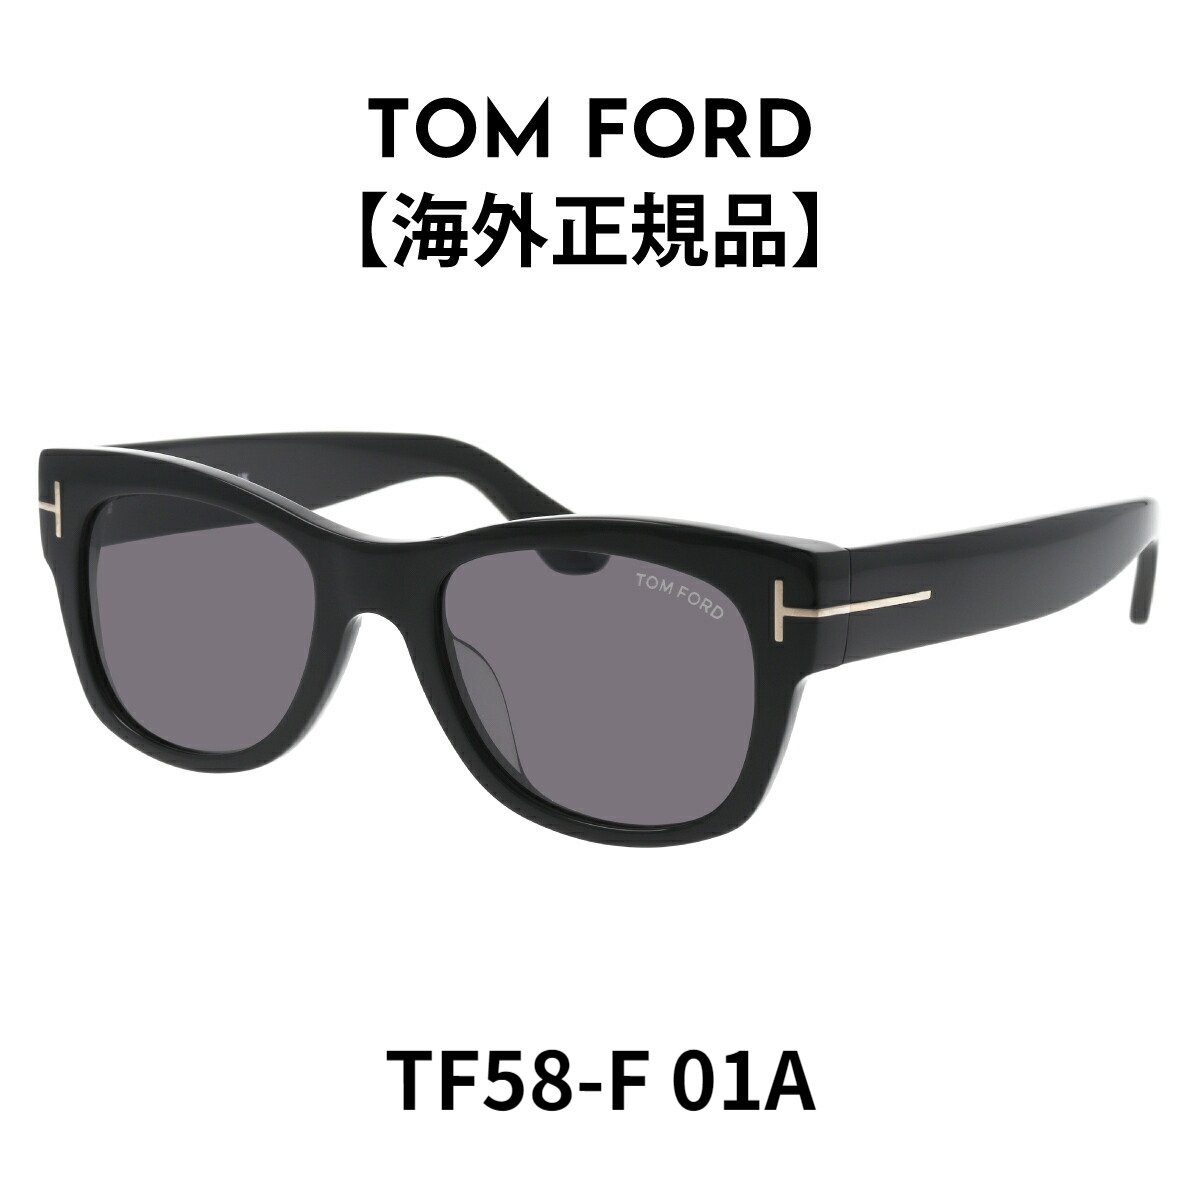 トムフォード TOM FORD トムフォード サングラス アジアンフィット CARY ウェリントン FT58F (TF58F) 01A ブランド 黒縁【海外正規品】